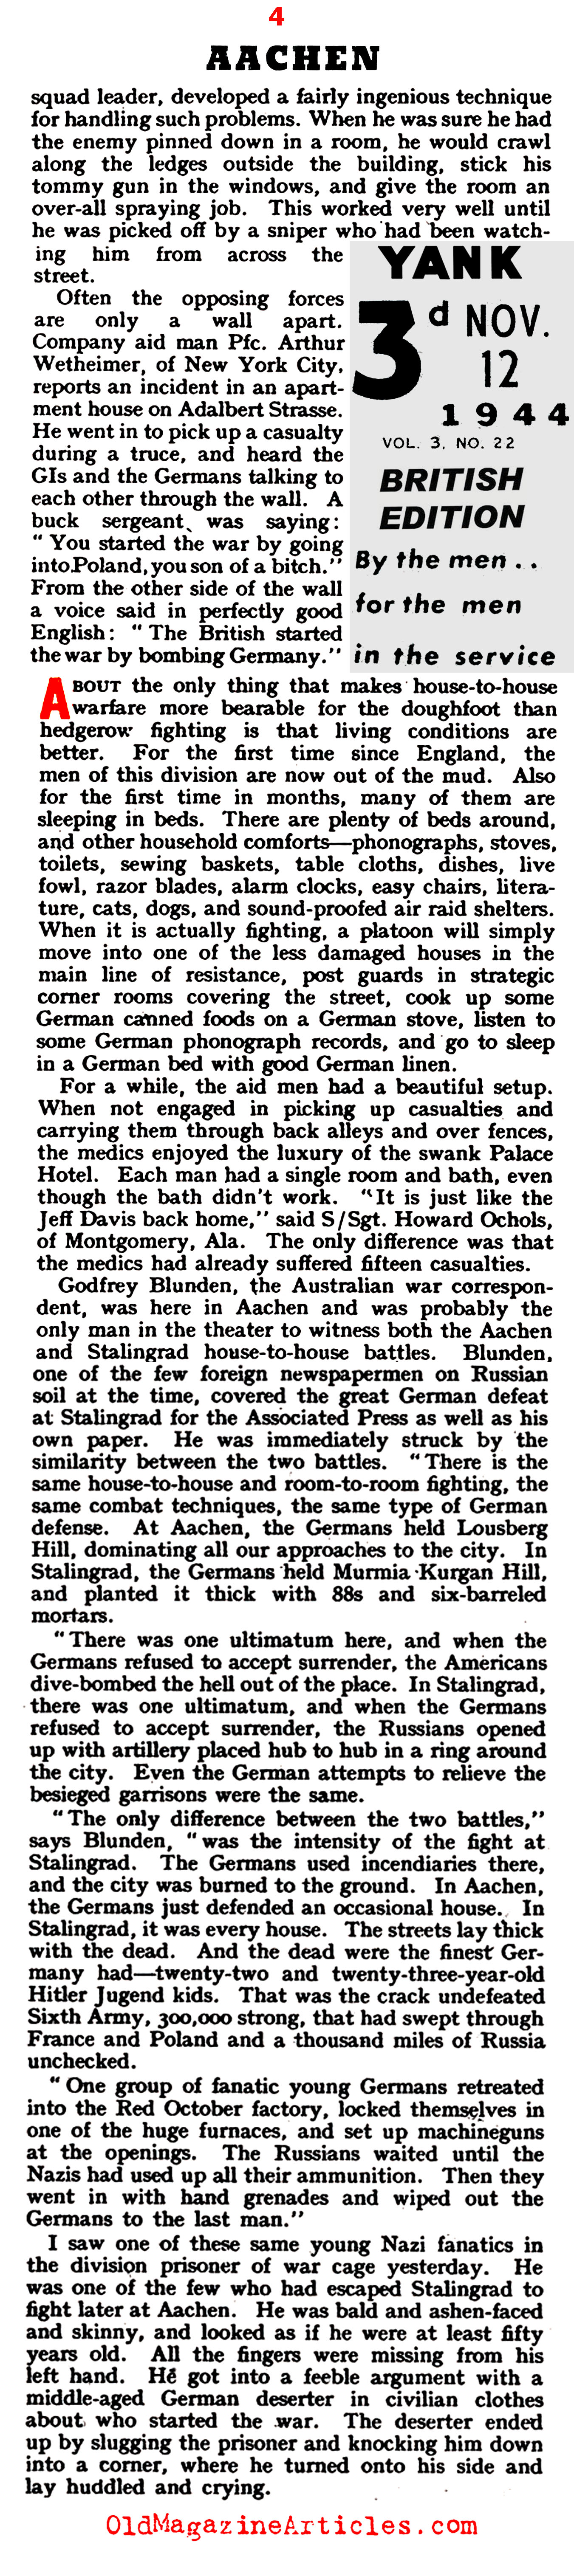 The Battle for Aachen (Yank Magazine, 1944)